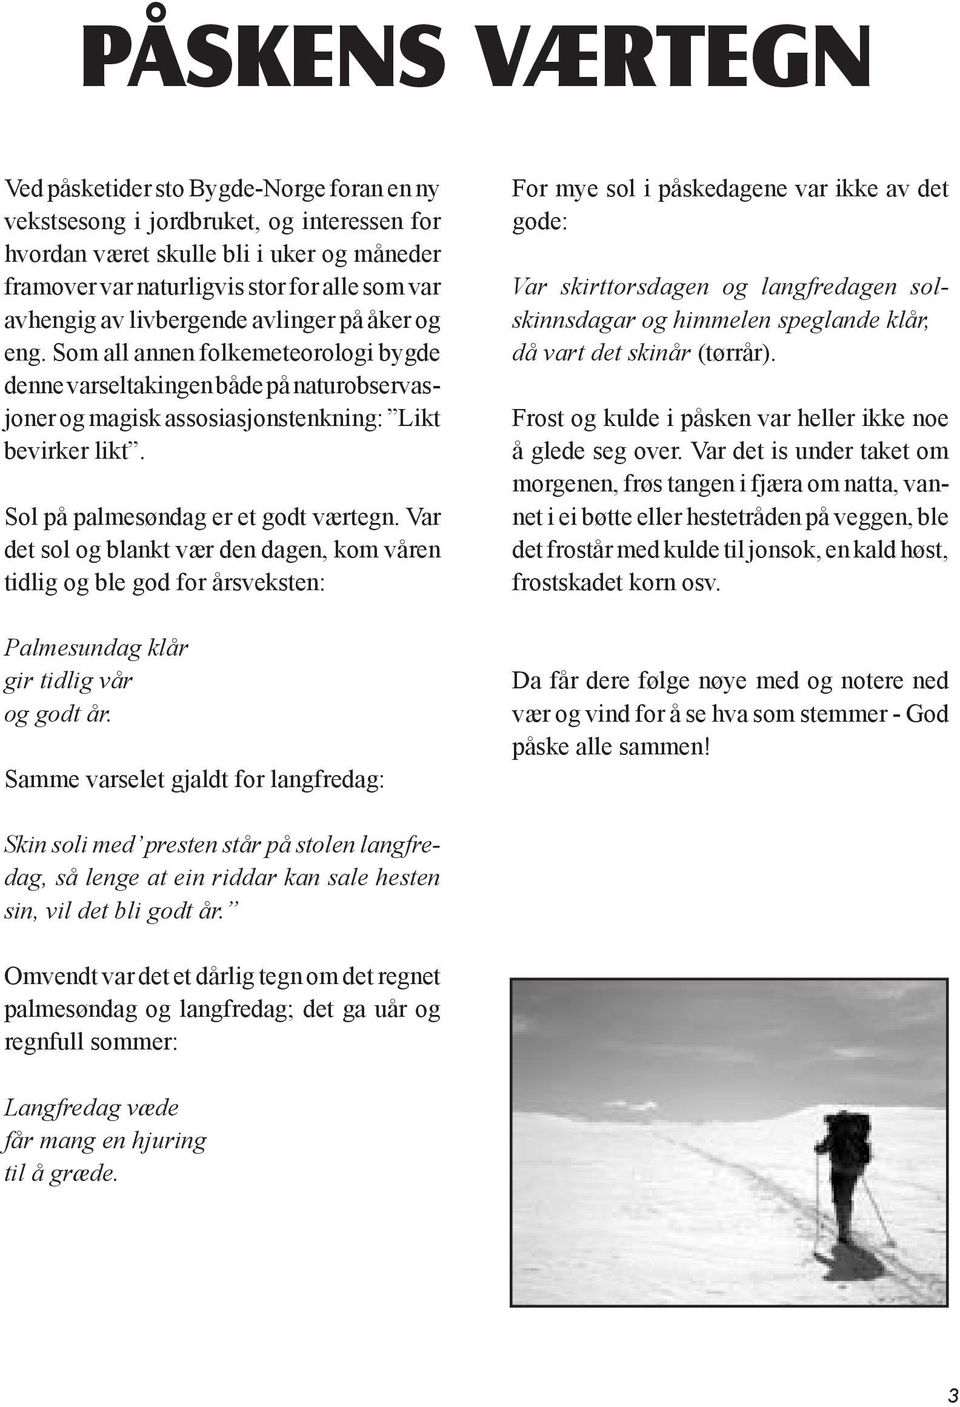 Øksfjord-Nytt ønsker alle leserne en riktig god påske! - PDF Free Download